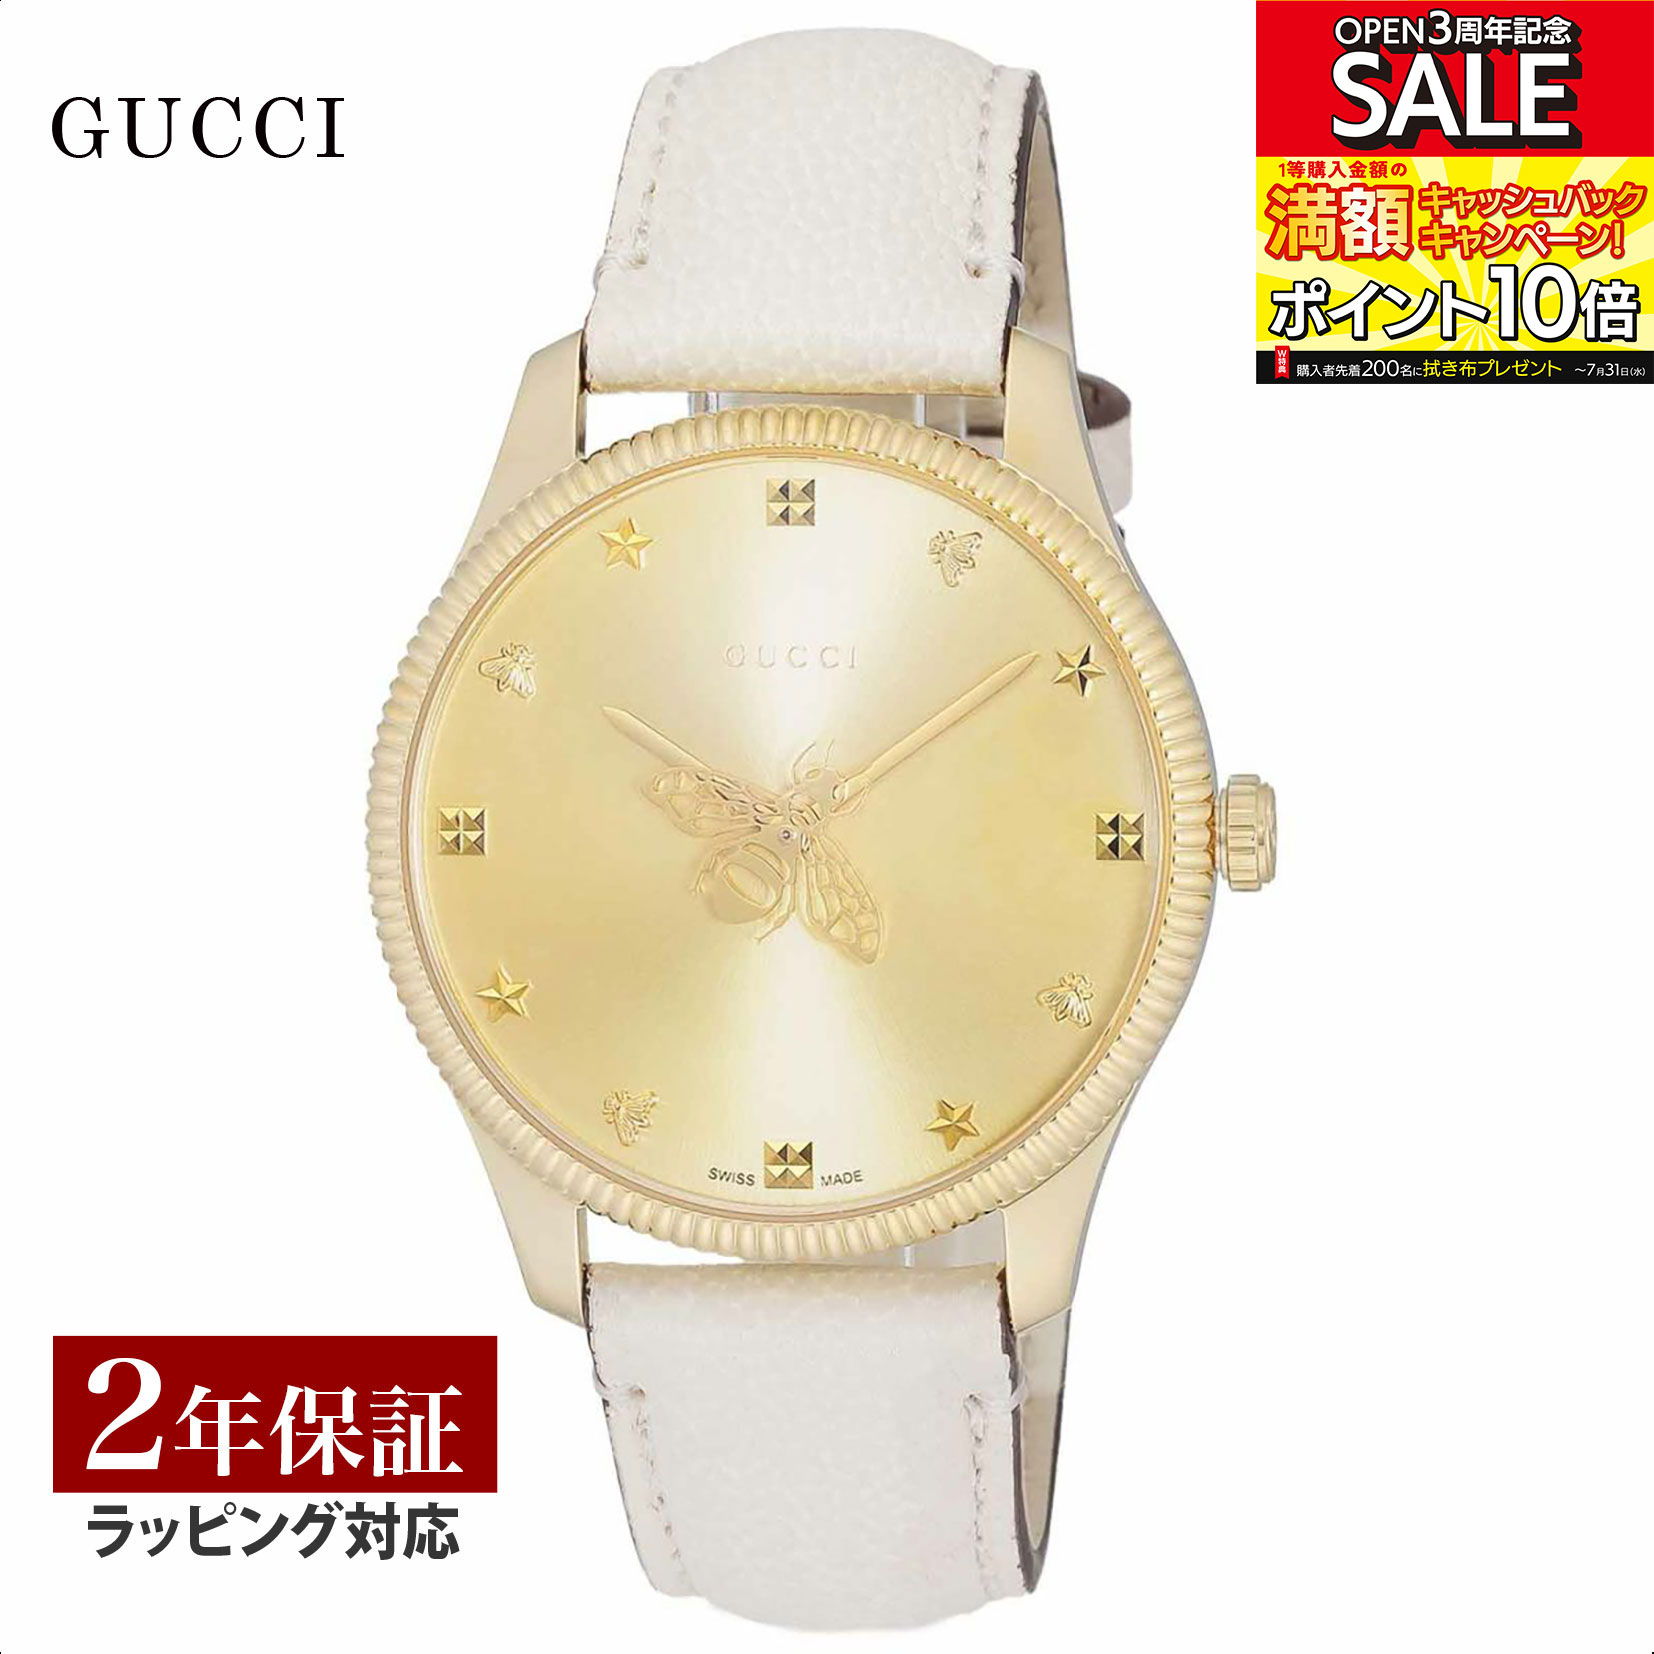 【当店限定】 グッチ GUCCI メンズ レディース 時計 G-TIMELESS Gタイムレス クォーツ ユニセックス グレー YA1264180 時計 腕時計 高級腕時計 ブランド